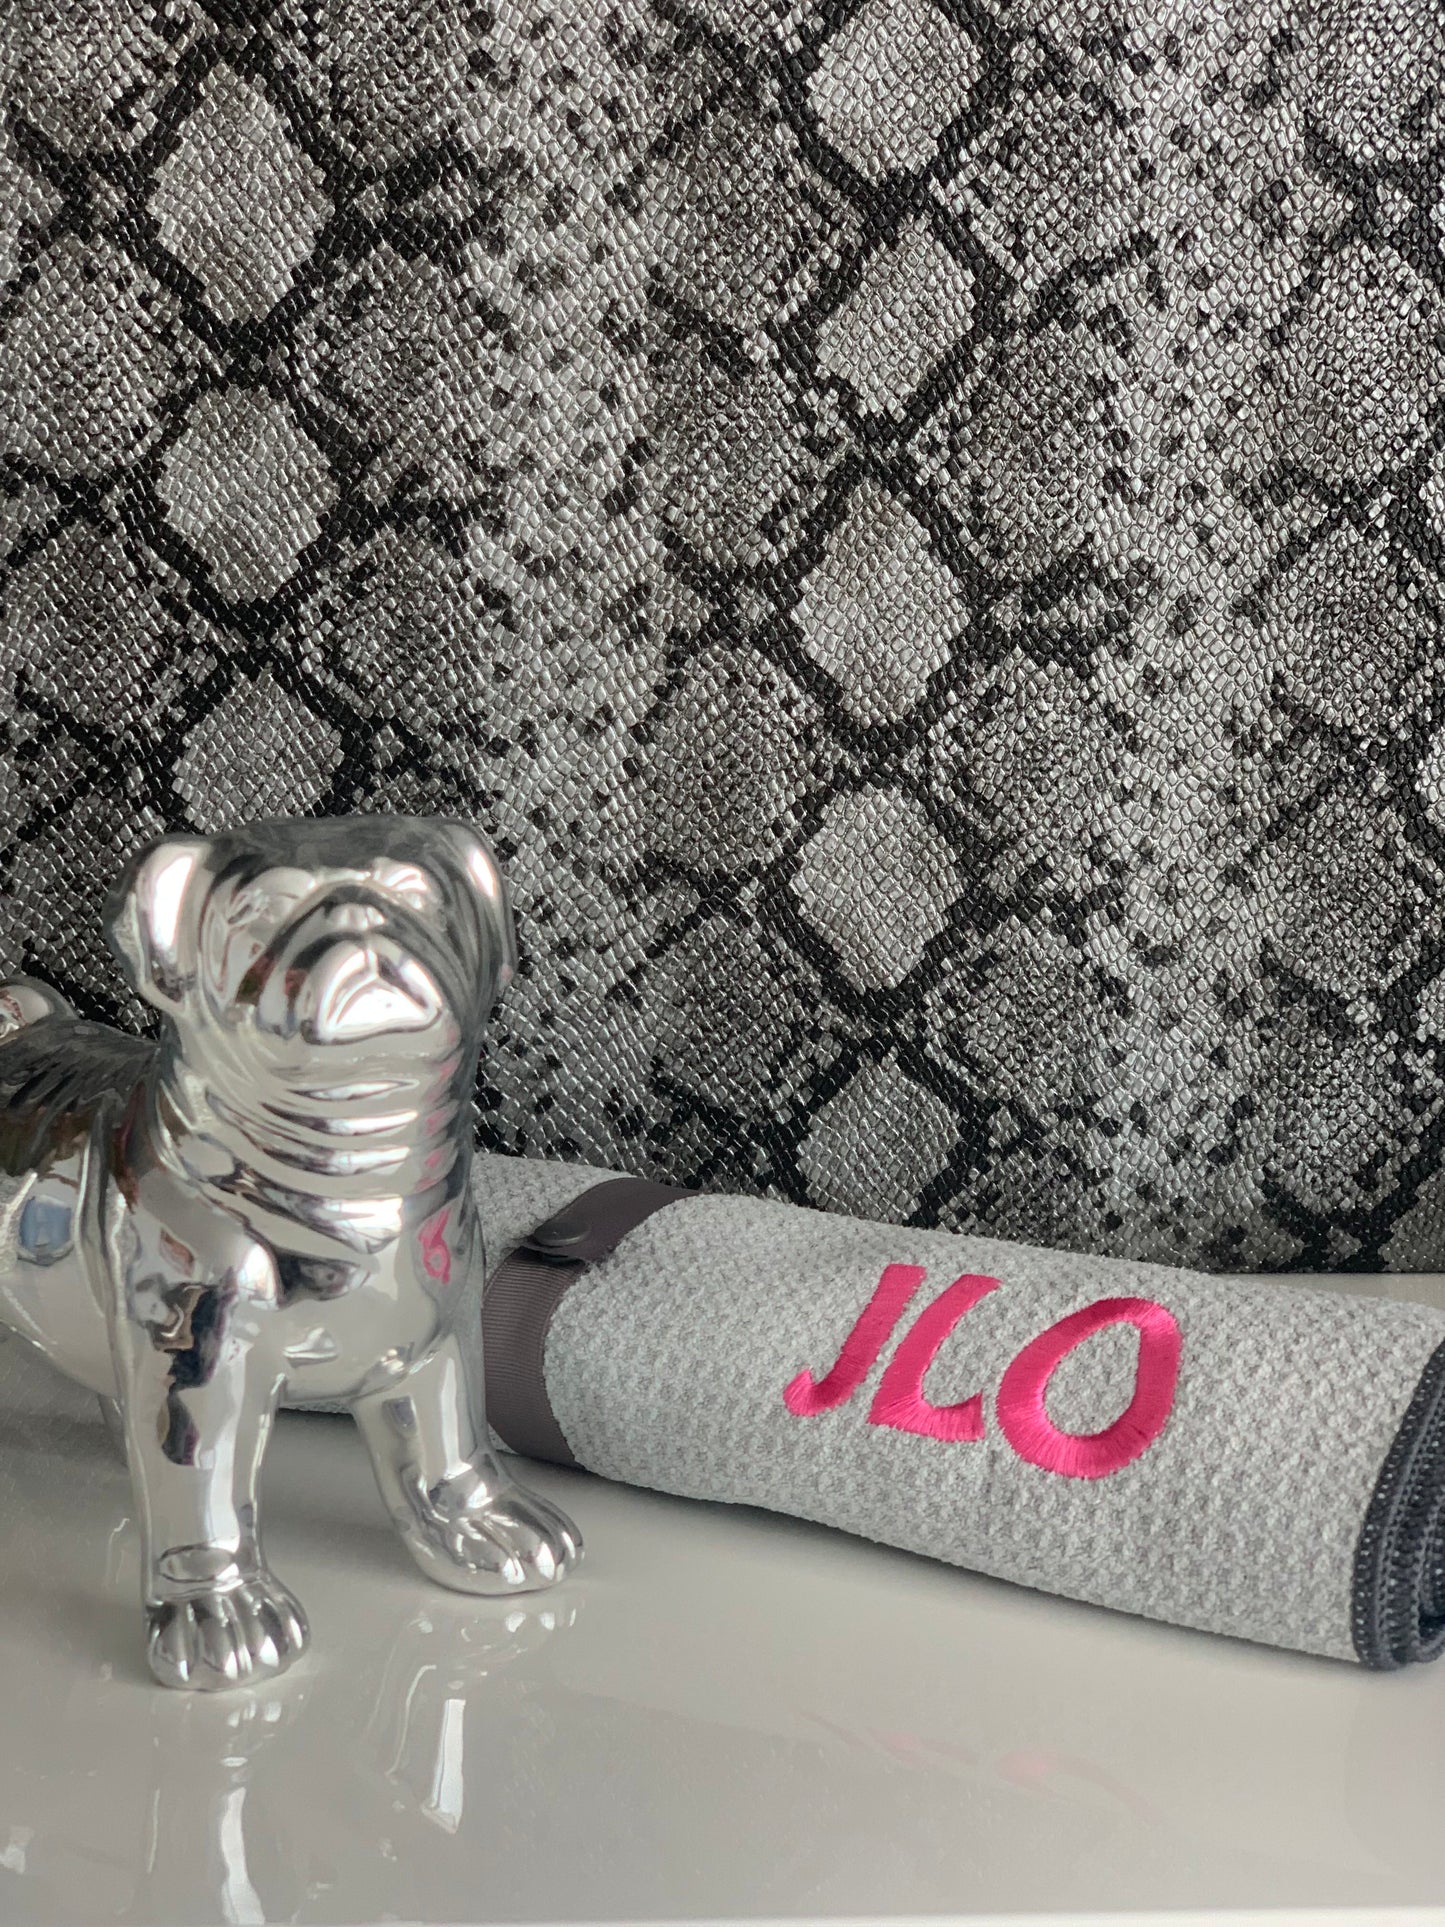 Mascosana - Pet Towel - personalisierts, saugstarkes Handtuch für Hunde, Katzen und Pferde - in grau mit farbiger Beschriftung